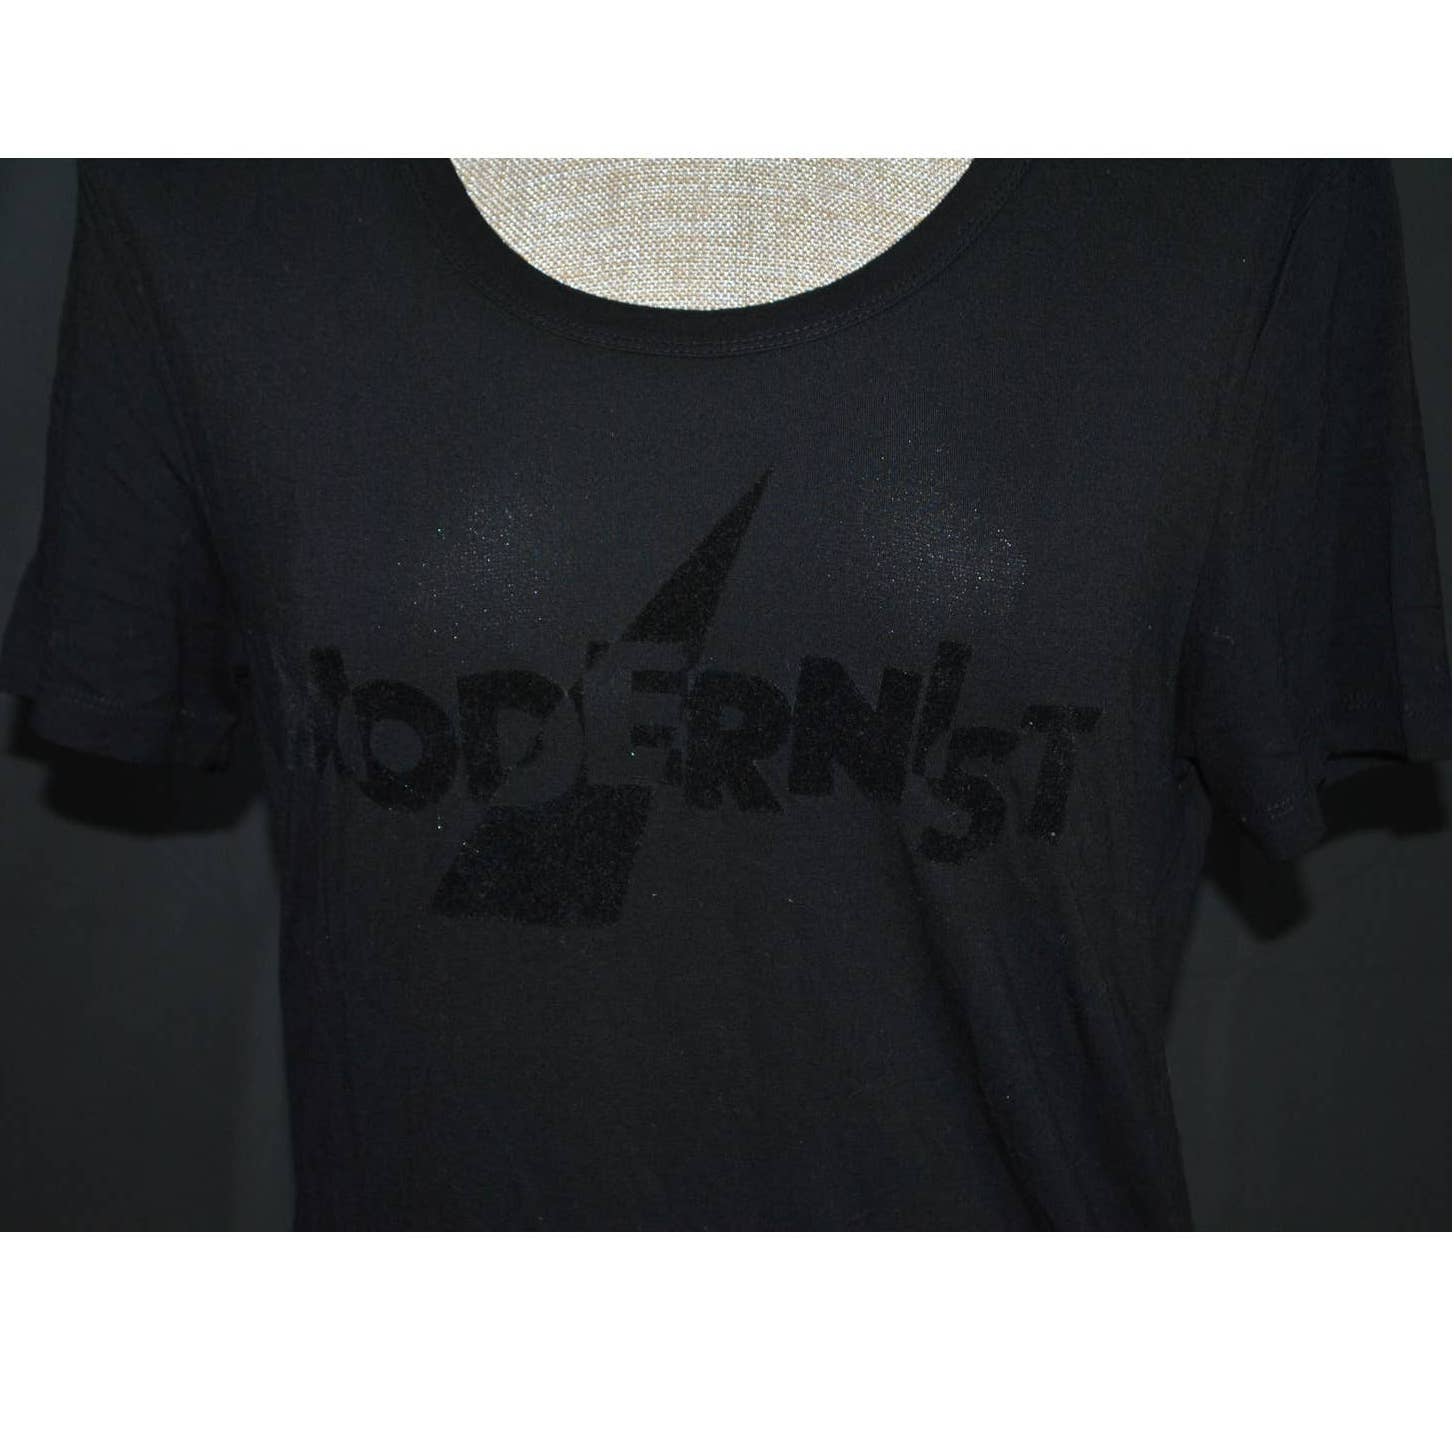 Cop Copine Black "Modernist" T-Shirt - L